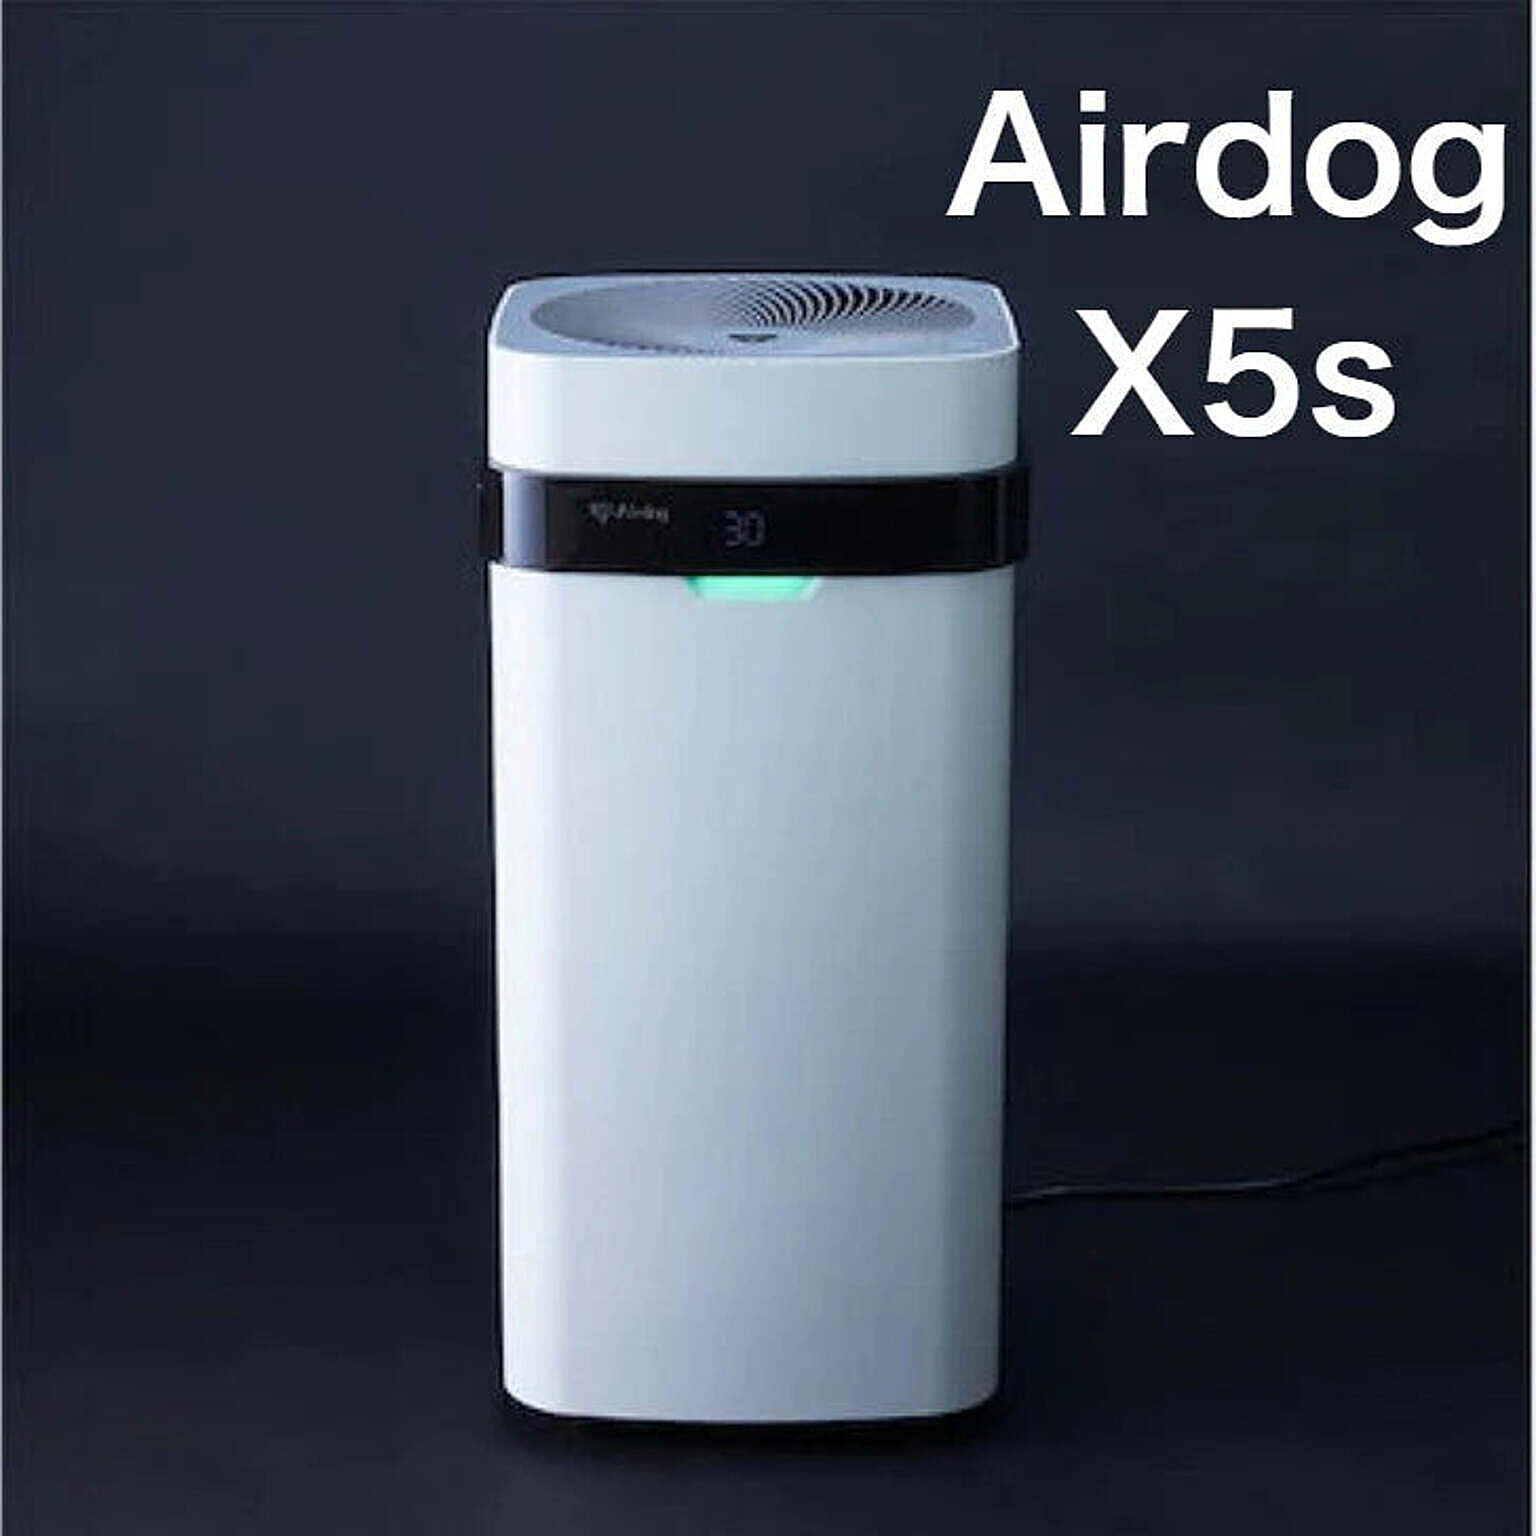 Airdog エアドッグ 正規品 X5s フラッグシップパフォーマンスモデル 高性能 空気清浄機 静音 TPAフィルター 交換不要